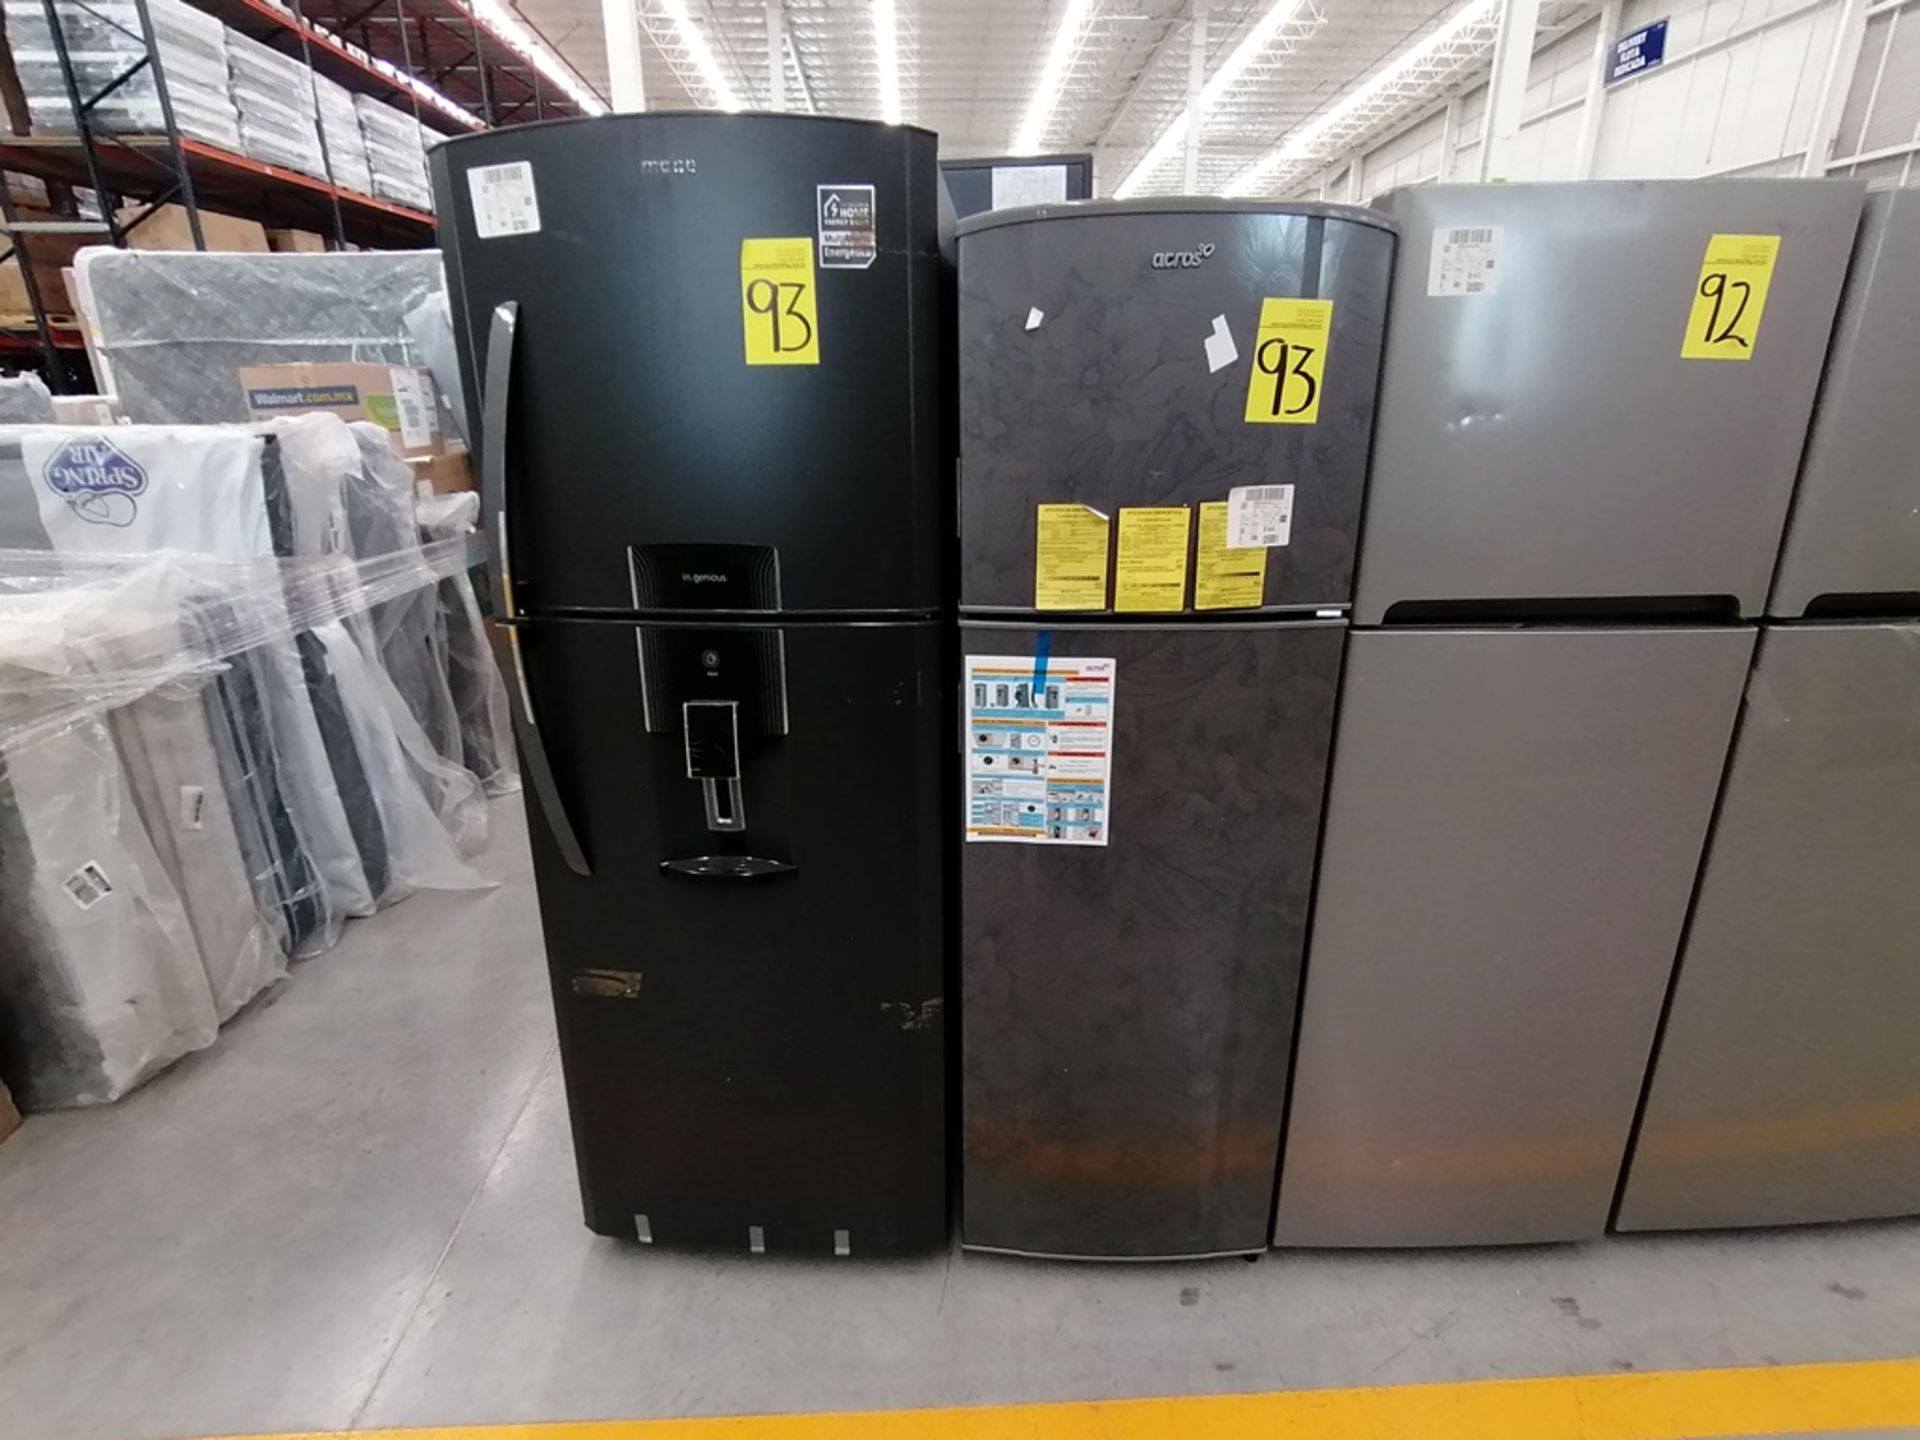 Lote de 2 Refrigeradores incluye: 1 Refrigerador, Marca Winia, Modelo DFR32210GNV, Serie MR217N104 - Image 3 of 15